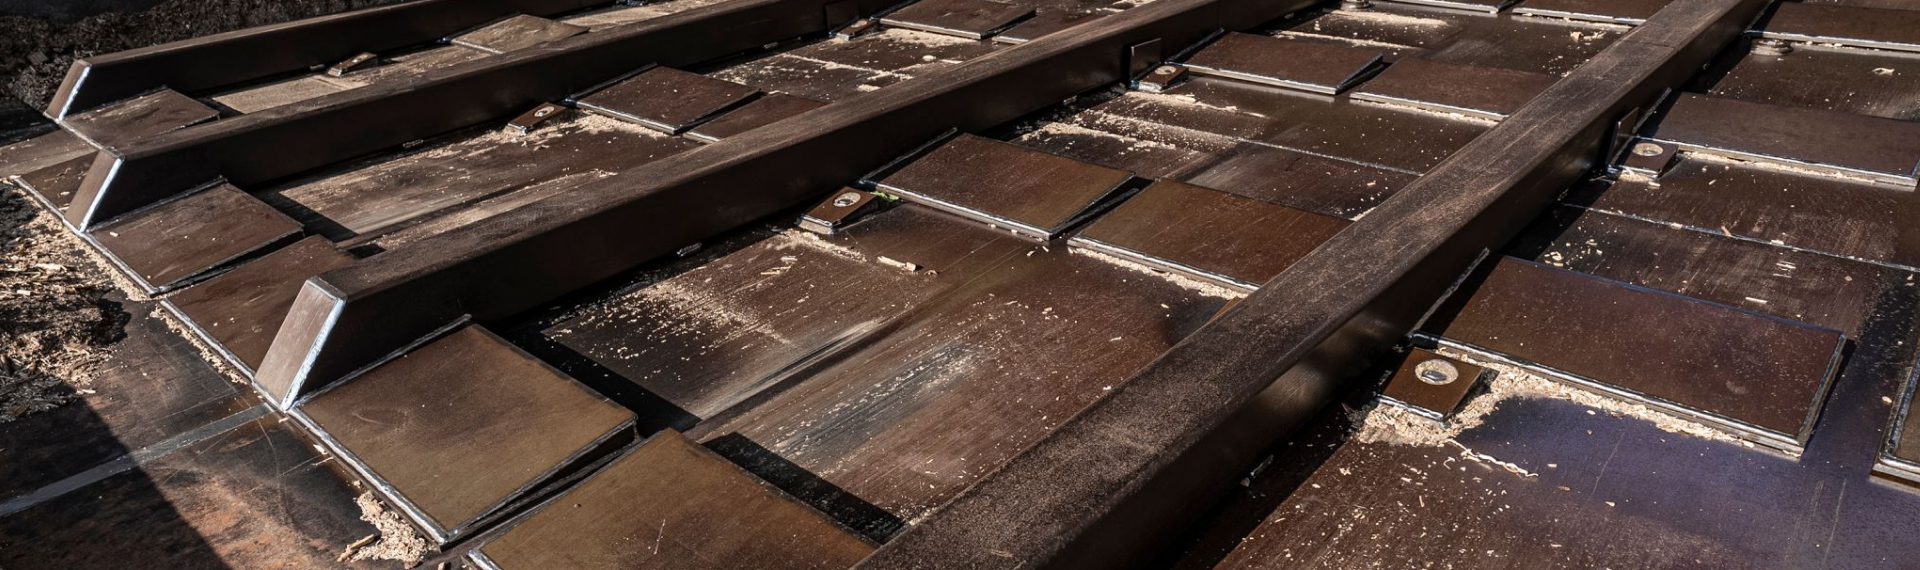 バイオマス地域暖房プラントの搬入口の一部で、耐腐食性のHardox® HiAce鋼を使用。